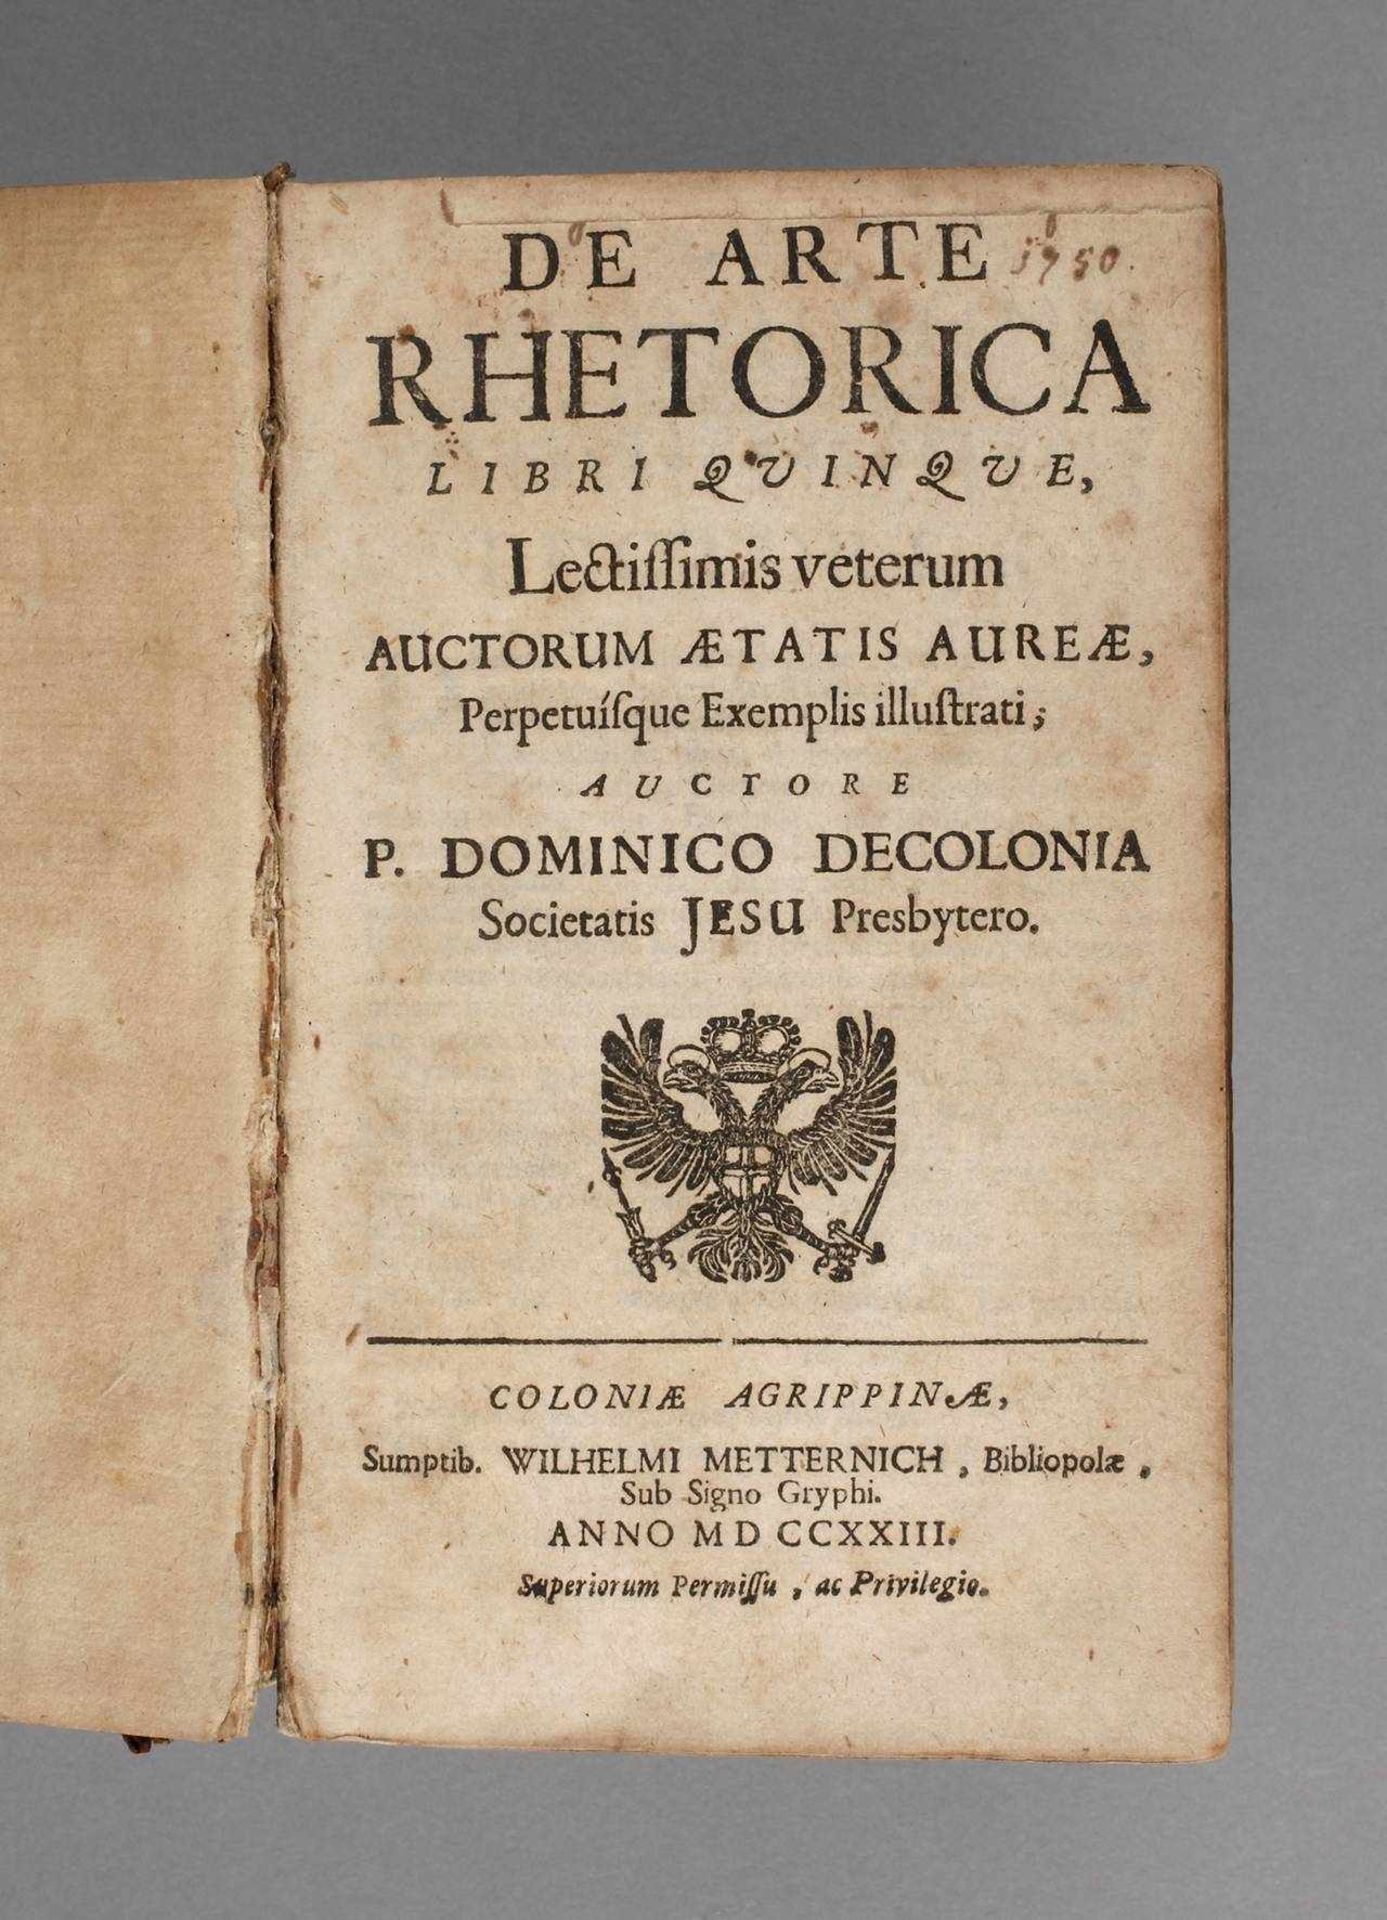 Sammelband Rhetorik um 1730vier Schriften in einem Band, 1: P. Dominico Decolonia, De Arte Rhetorica